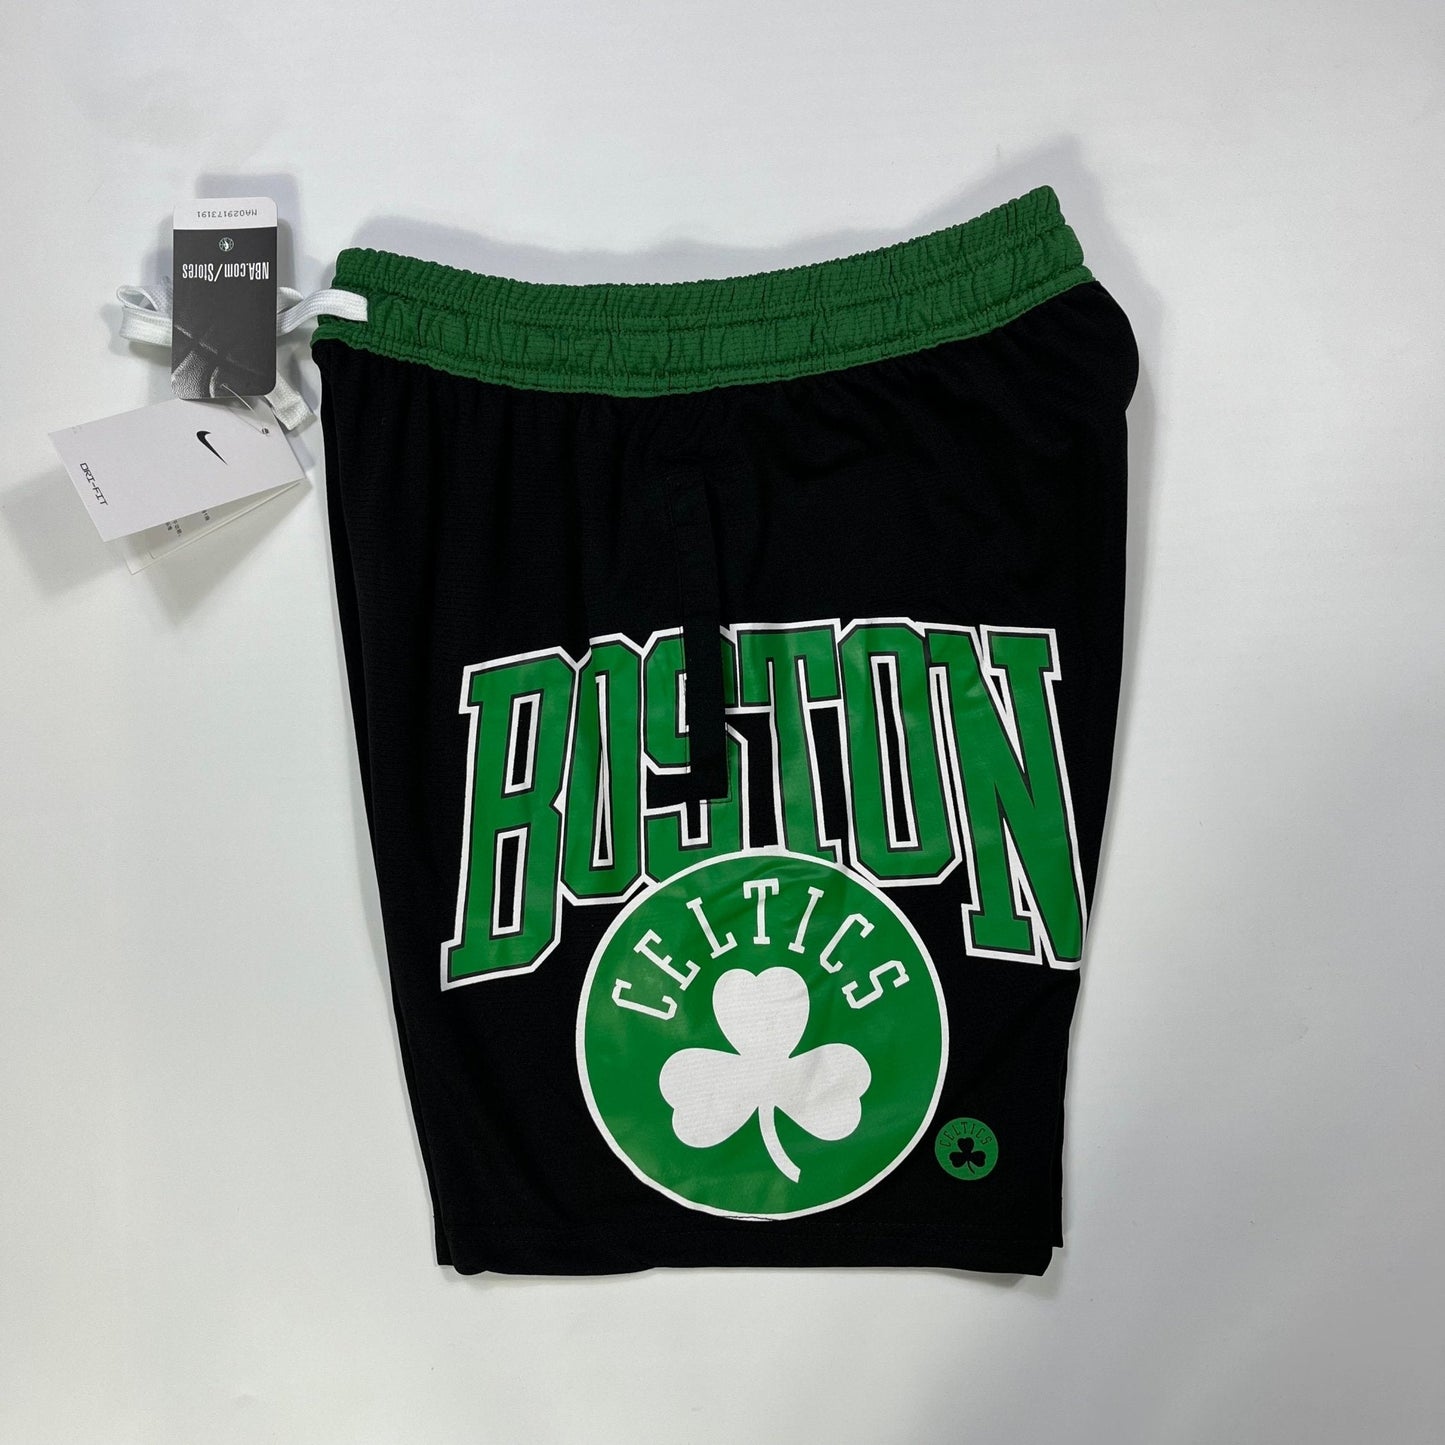 Shorts casual do Boston Celtics preto